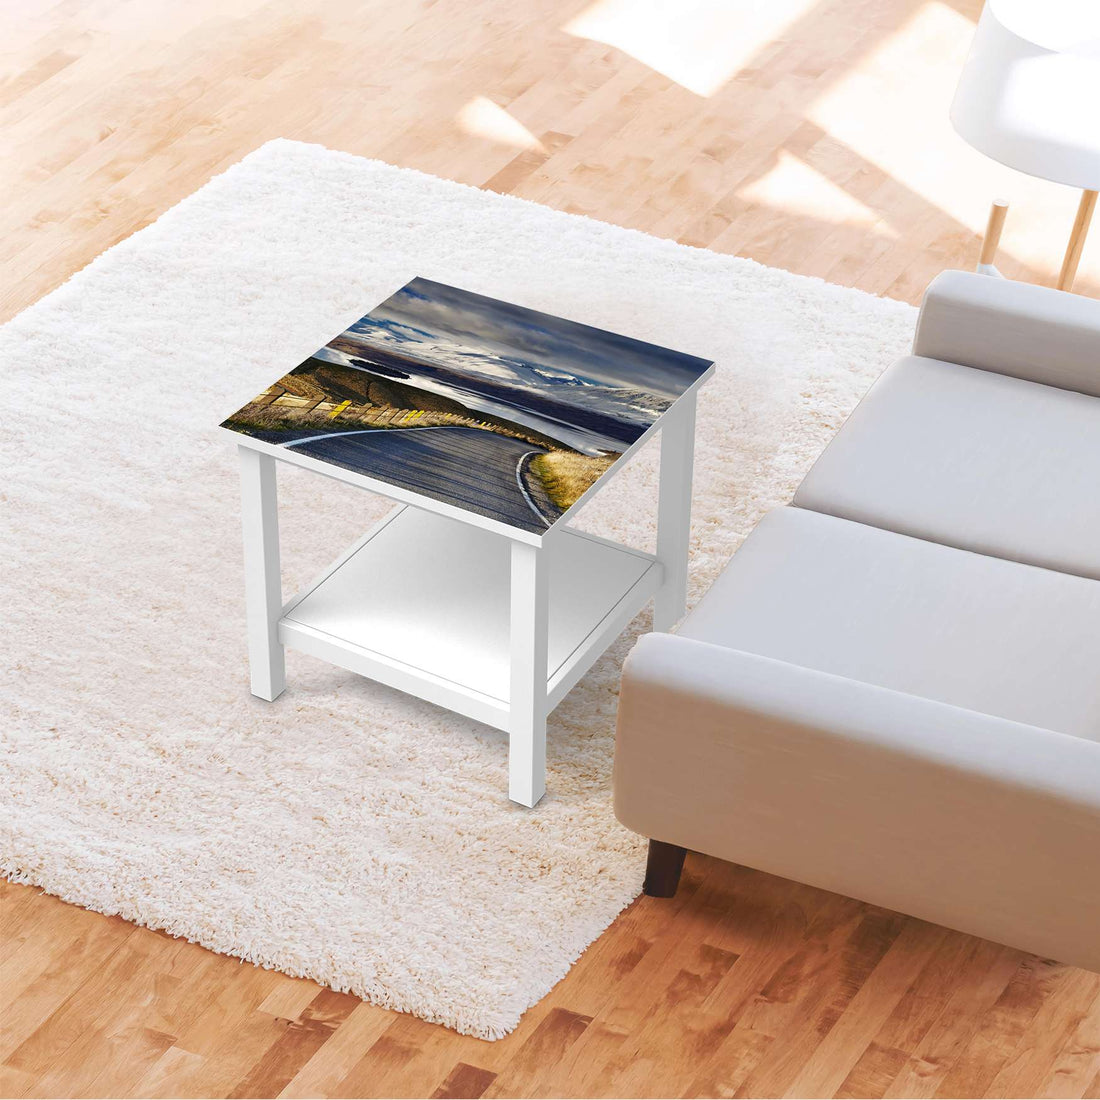 Möbel Klebefolie New Zealand - IKEA Hemnes Beistelltisch 55x55 cm - Wohnzimmer